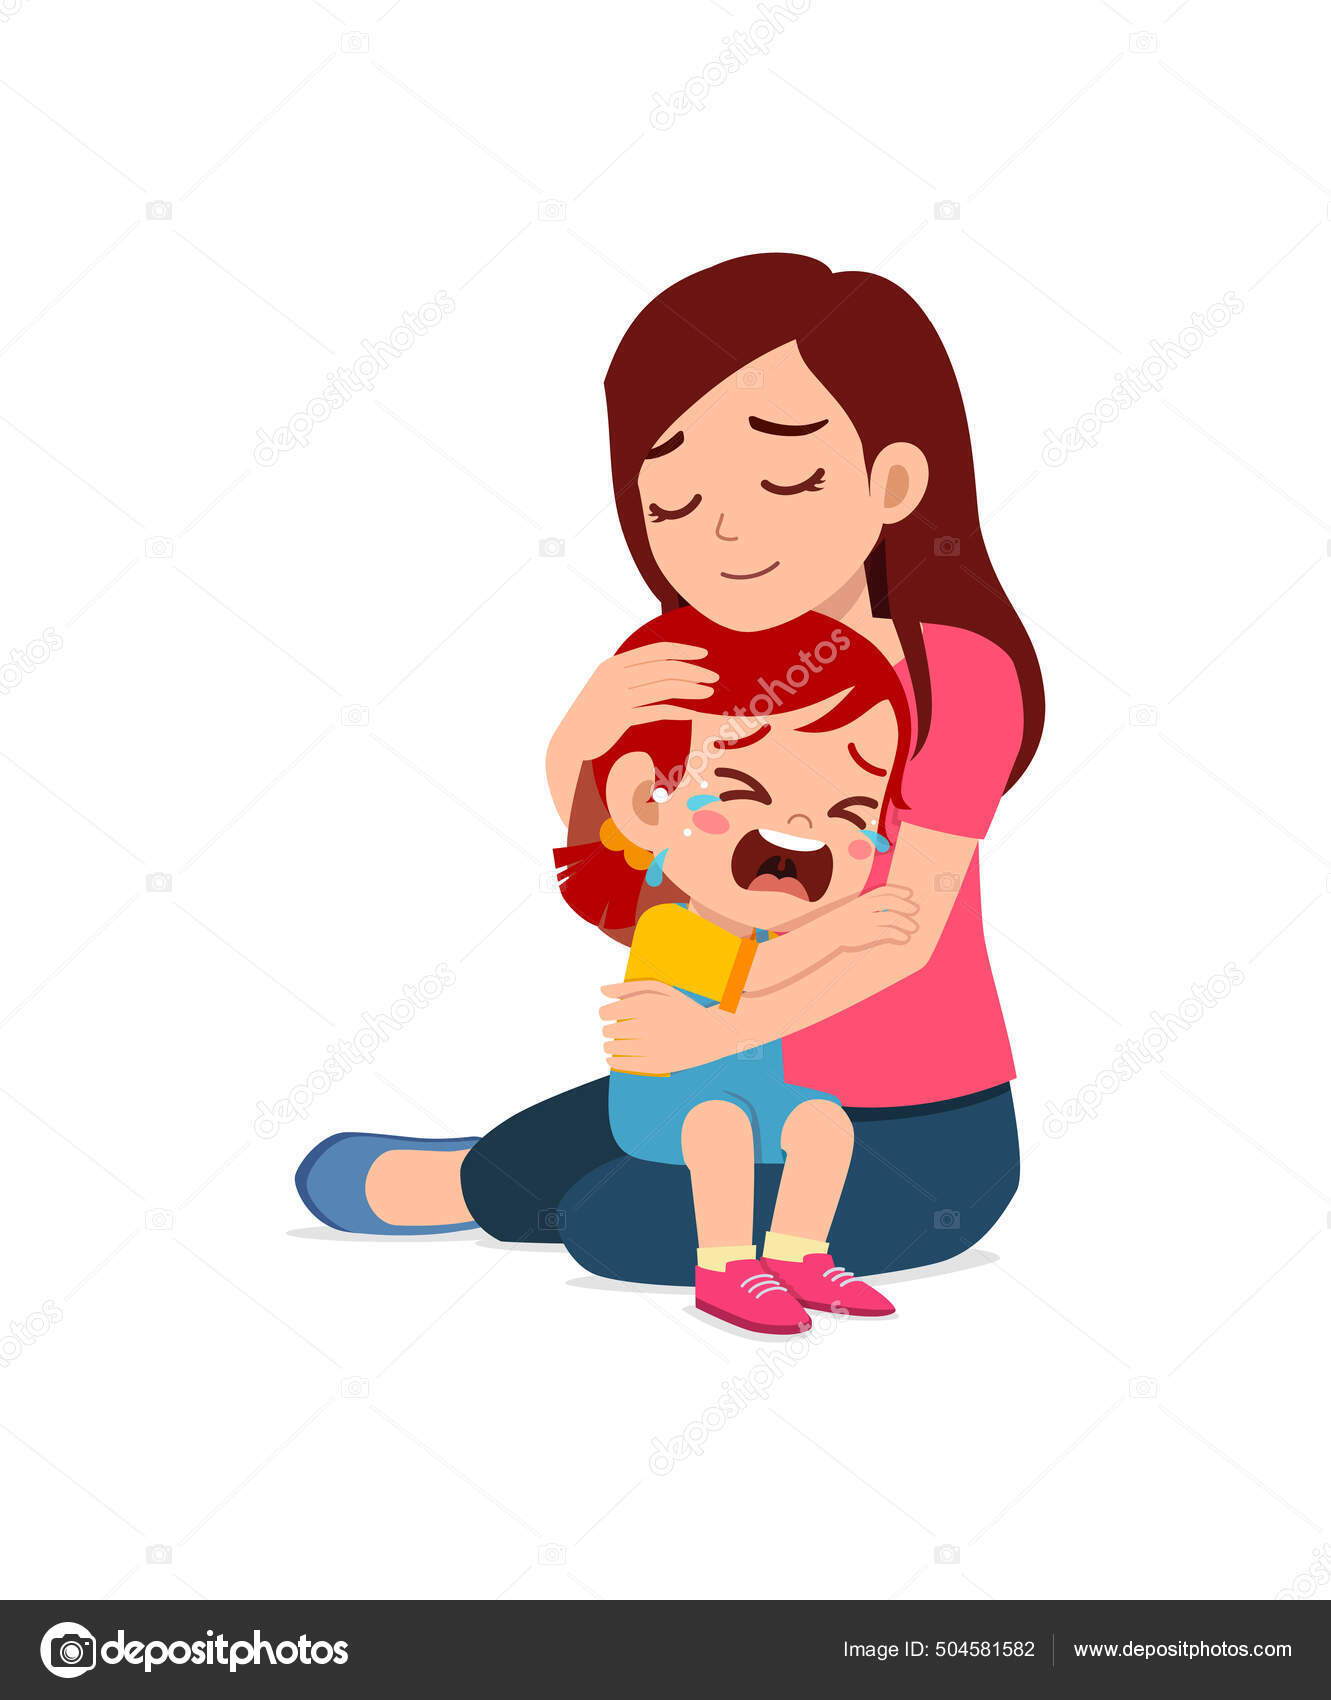 若いお母さんは泣いてる女の子を抱きかかえて慰めようとして — ストックベクター ©colorfuelstudio 504581582